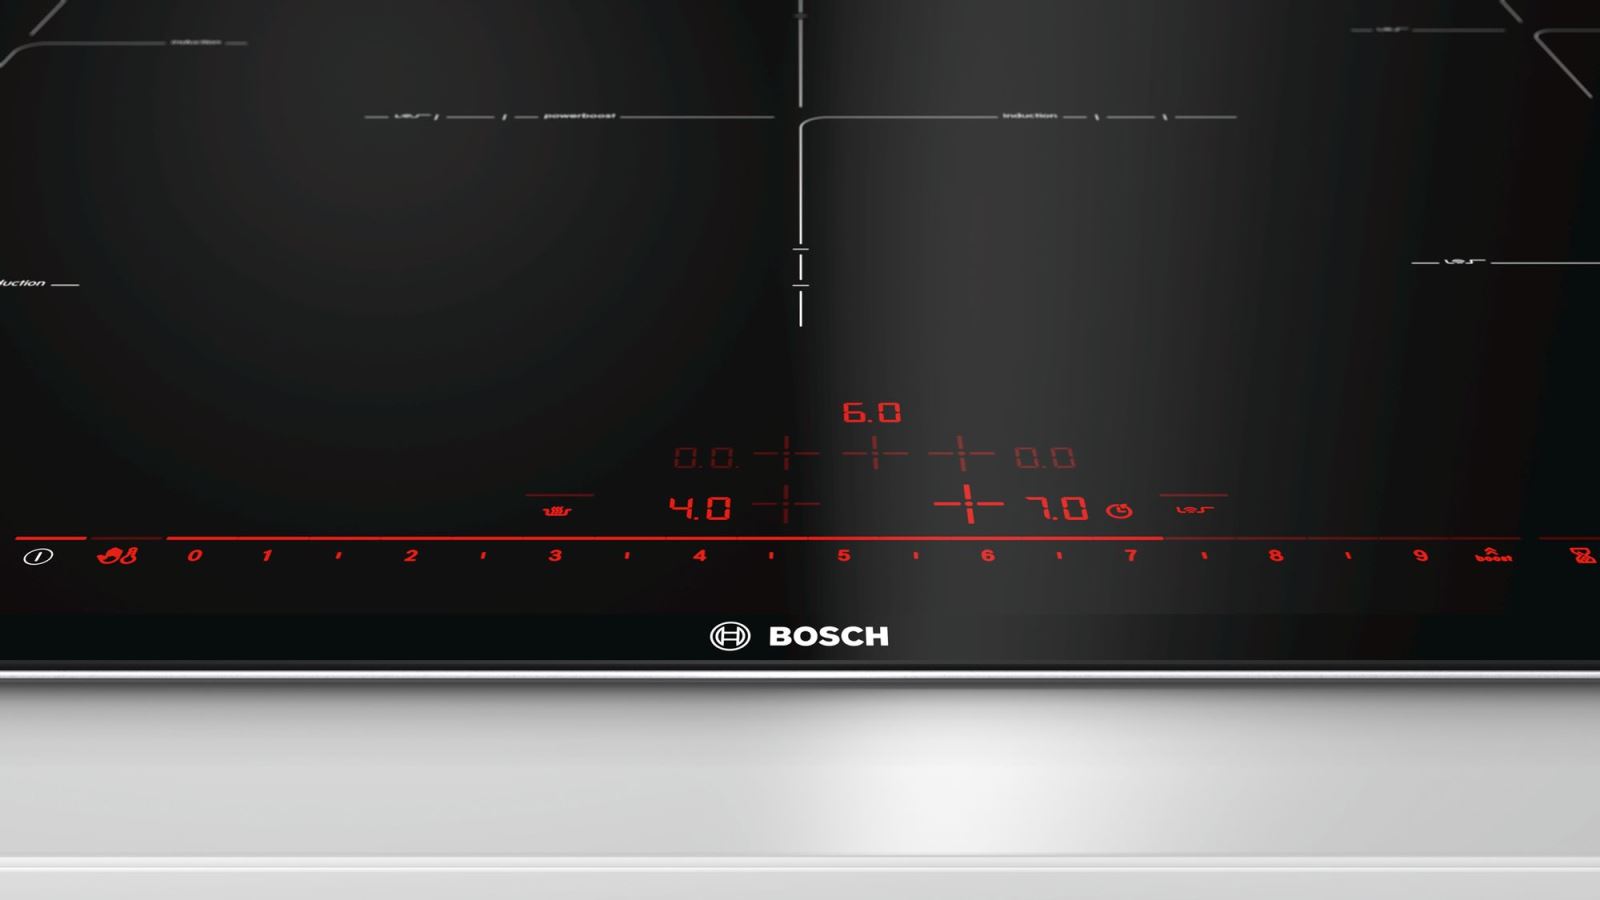 Bếp Từ 5 Bosch PIV975DC1E Seri 8, Bếp từ bosch nhập khẩu, bếp từ bosch 2 vùng nấu, bếp từ bosch puc631bb2e, bếp từ bosch ppi82560ms, bếp từ bosch 3 vùng nấu, bếp từ bosch pid675dc1e, bếp từ bosch serie 8, bếp từ bosch pij651fc1e, bếp từ bosch puj631bb2e